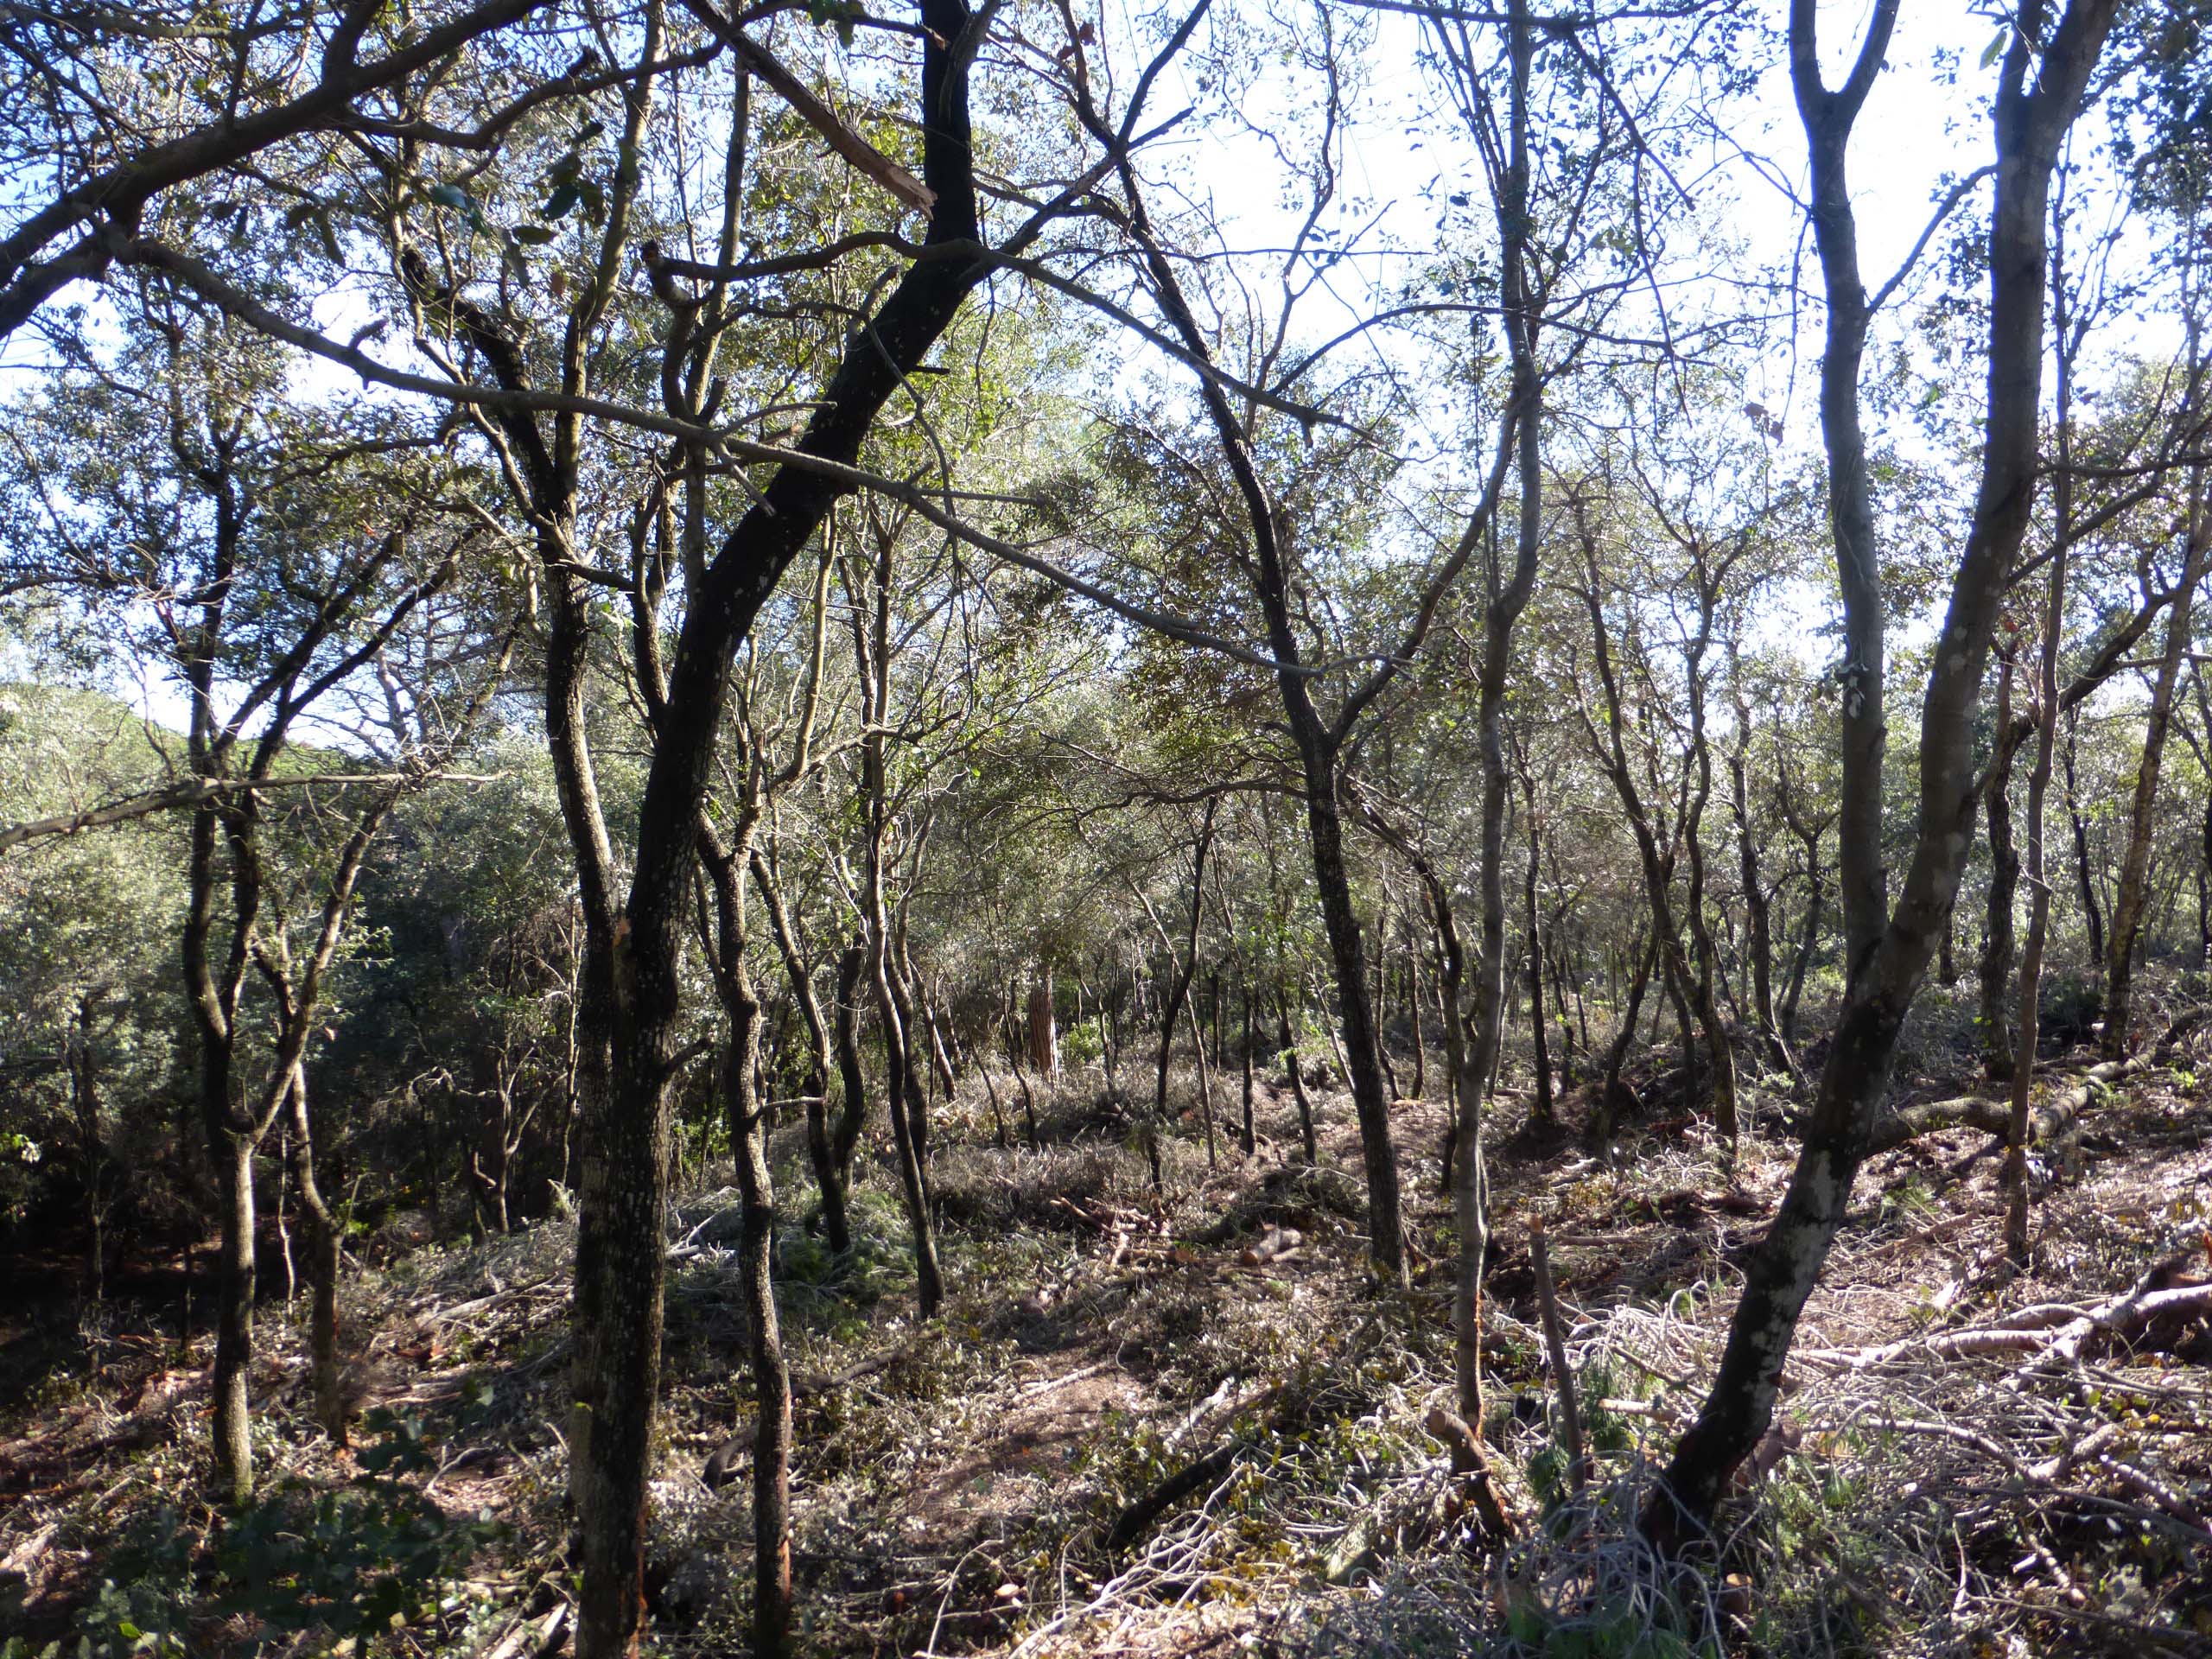 Aspecte general del bosc després de l’aclarida de millora, amb el domini de l’alzina. Desembre 2015